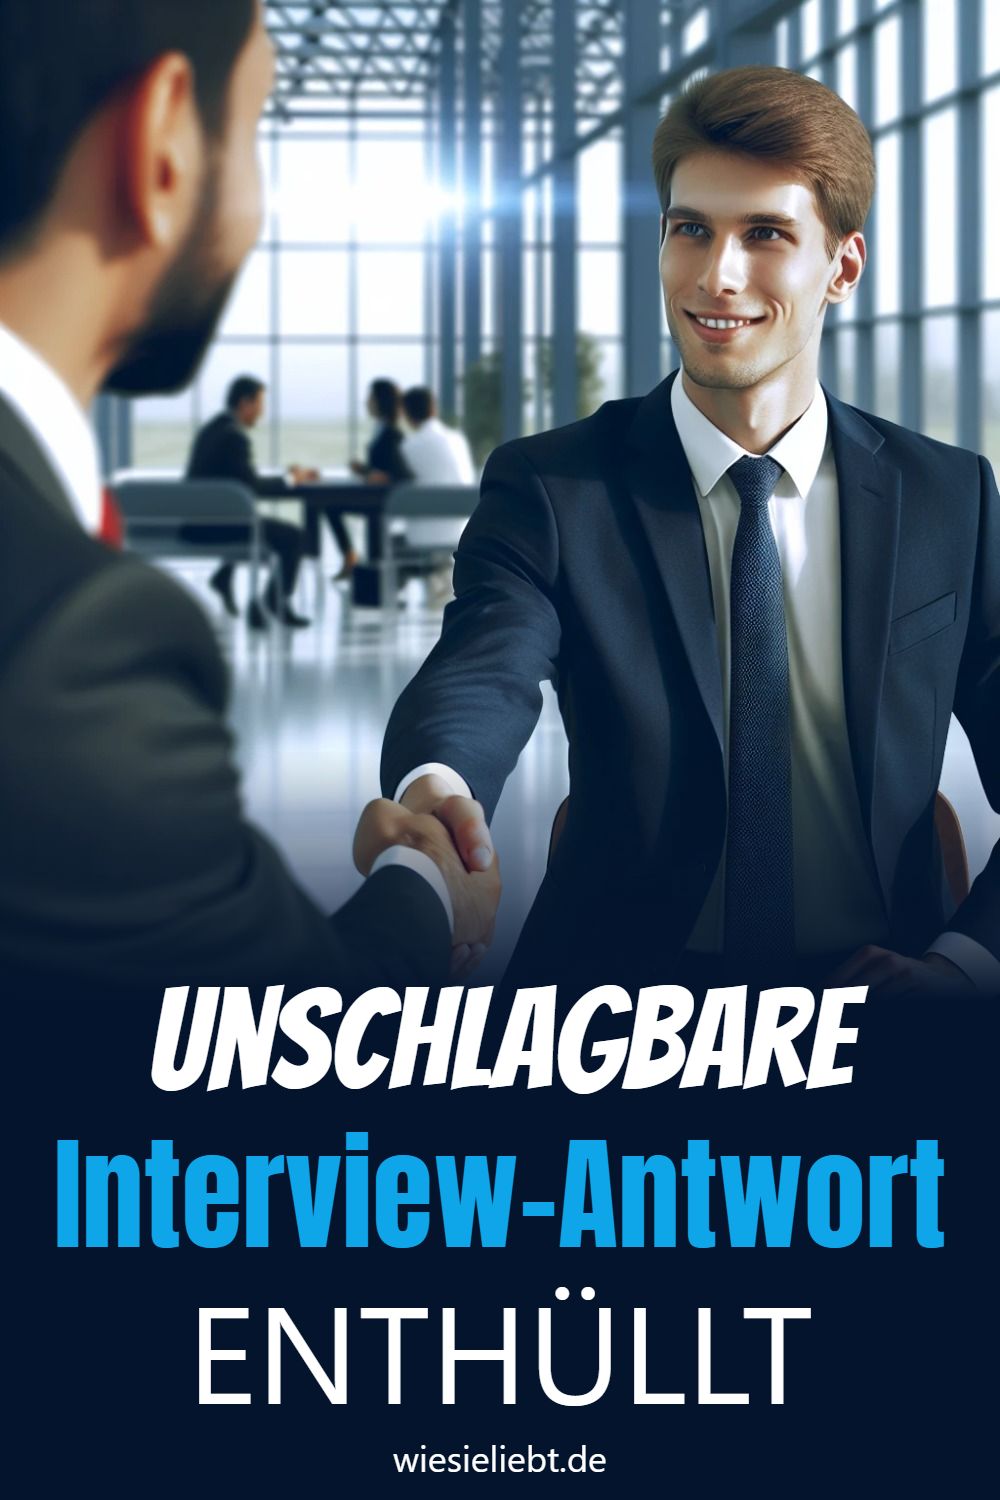 Unschlagbare Interview-Antwort ENTHÜLLT